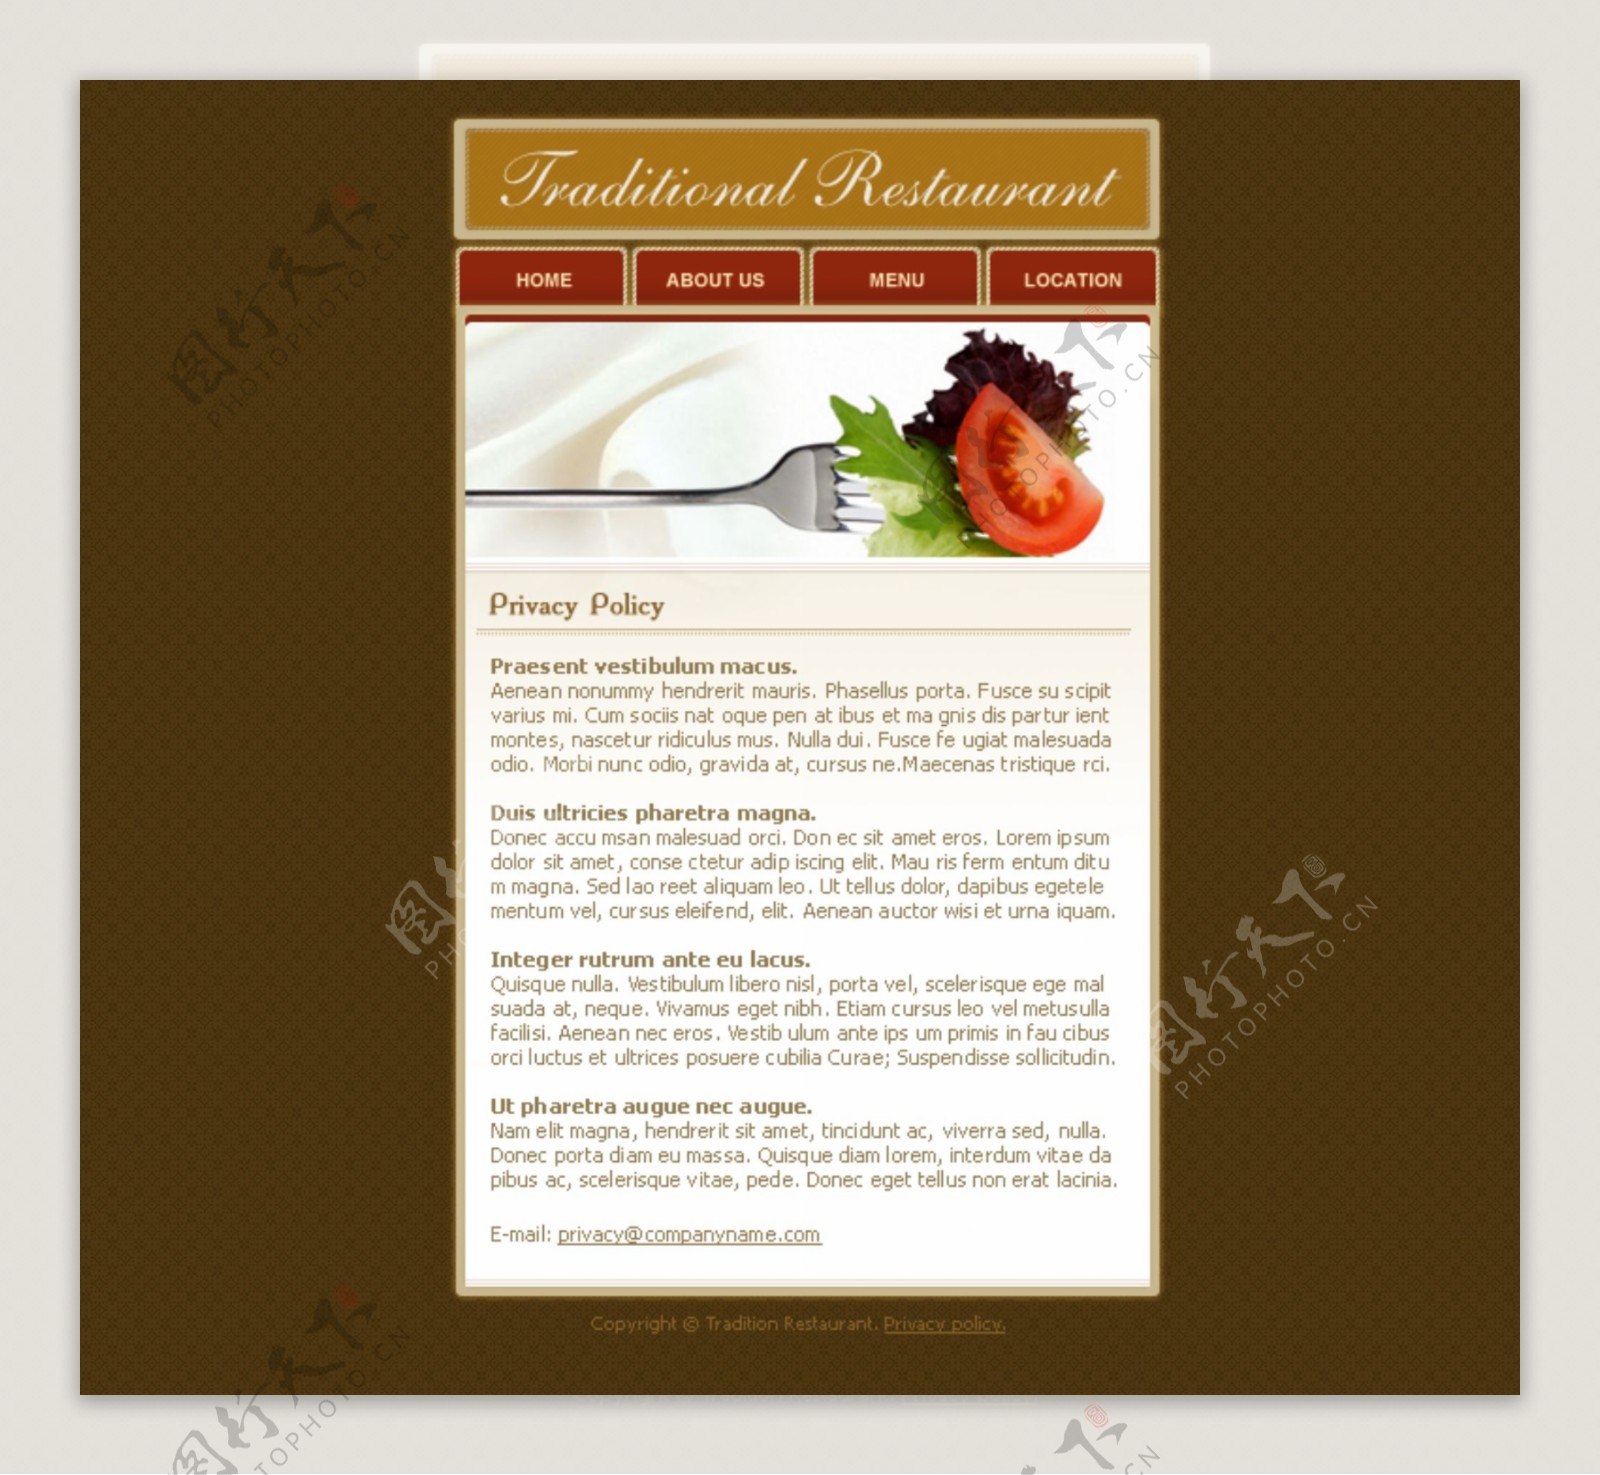 美食餐厅刀叉蔬菜番茄鲜艳诱人棕色背景网页模版psd分层素材餐厅网站图片